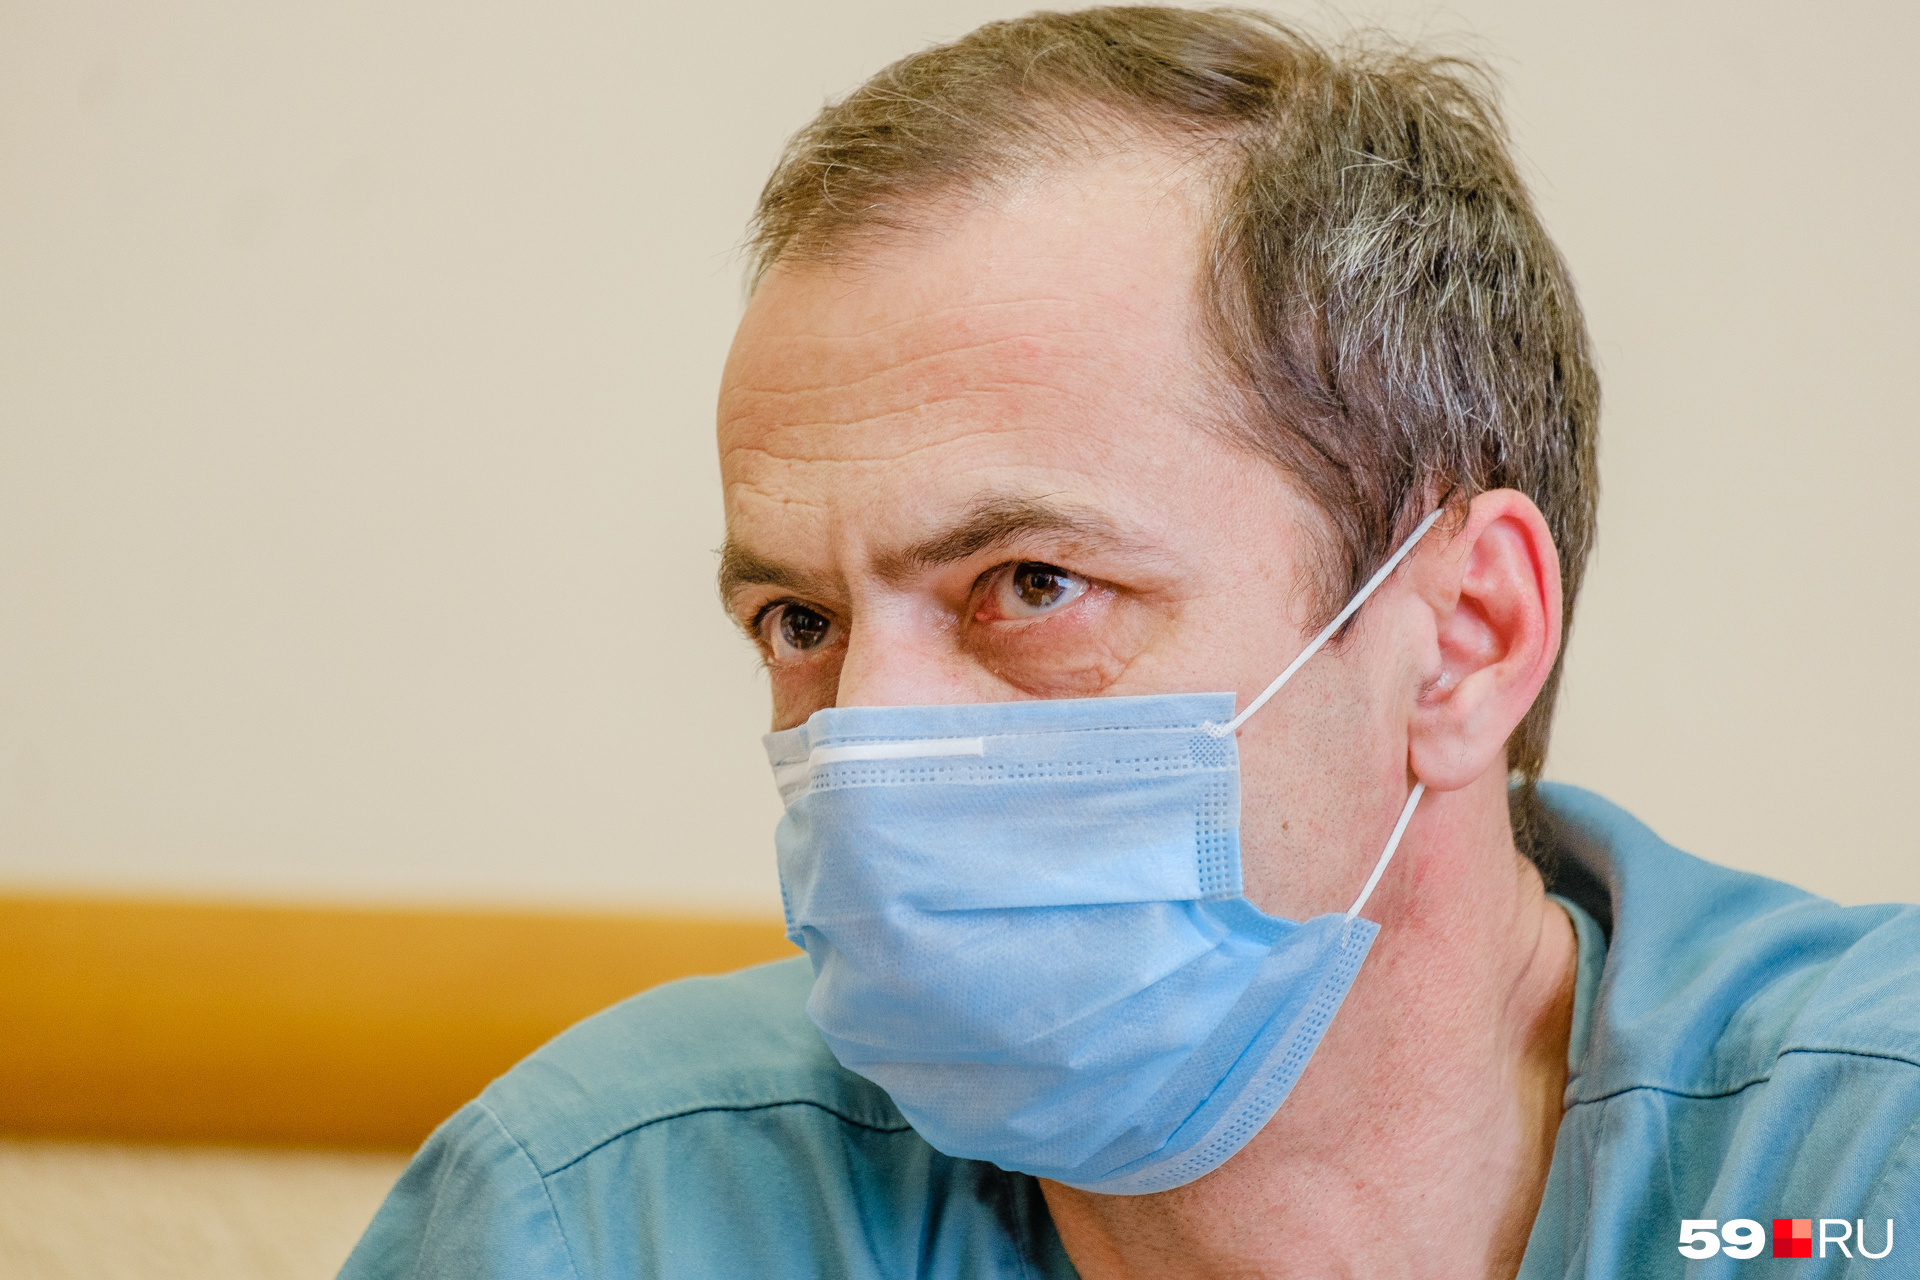 Анатолий Владимирович говорит, что в непрофильное экстренное отделение действительно могут попасть зараженные пациенты без симптомов